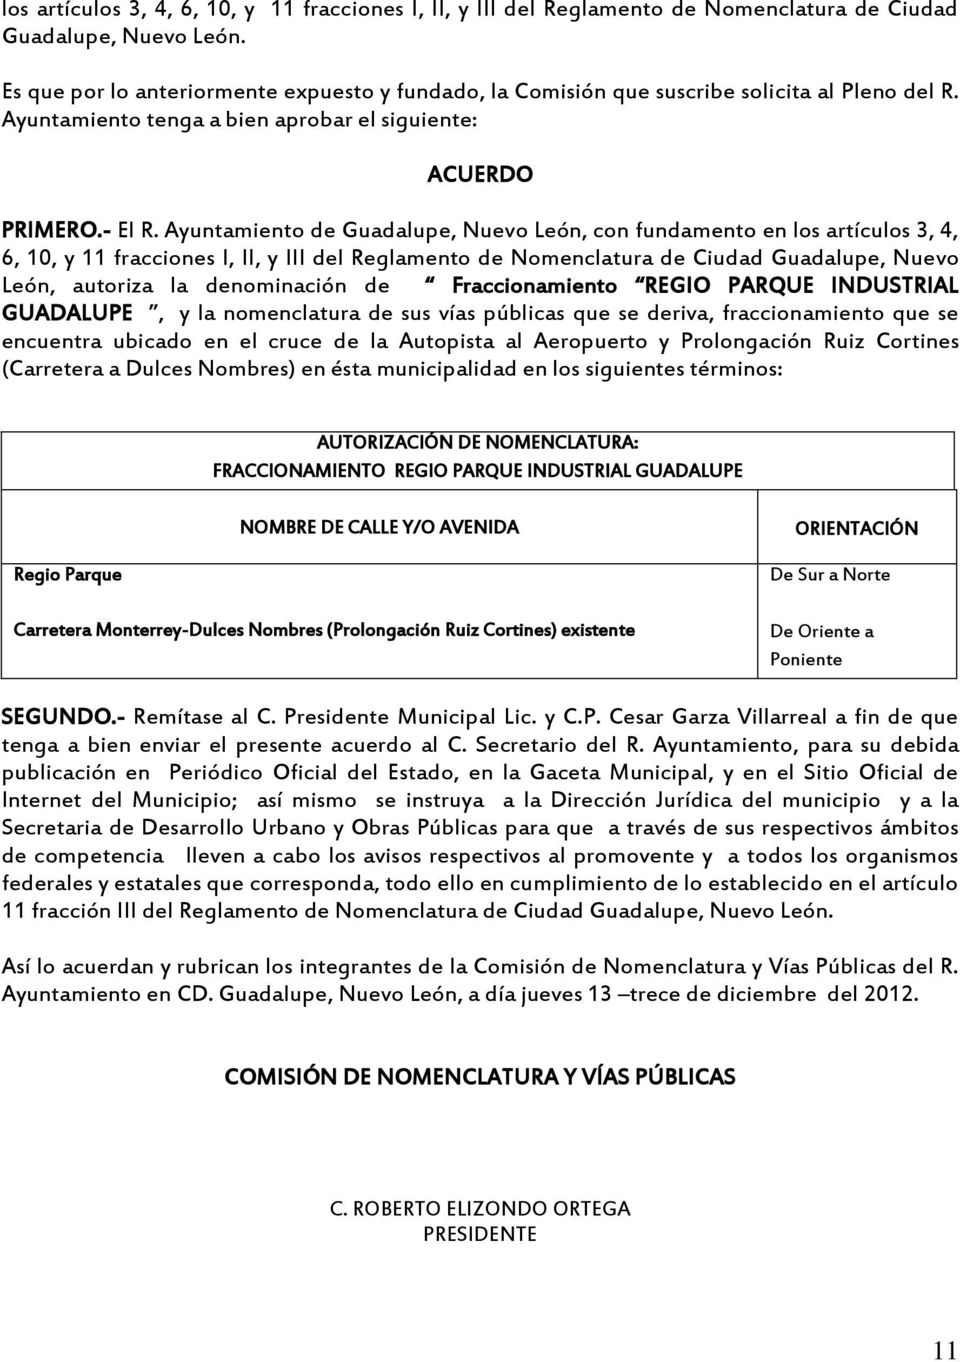 Ayuntamiento de Guadalupe, Nuevo León, con fundamento en los artículos 3, 4, 6, 10, y 11 fracciones I, II, y III del Reglamento de Nomenclatura de Ciudad Guadalupe, Nuevo León, autoriza la